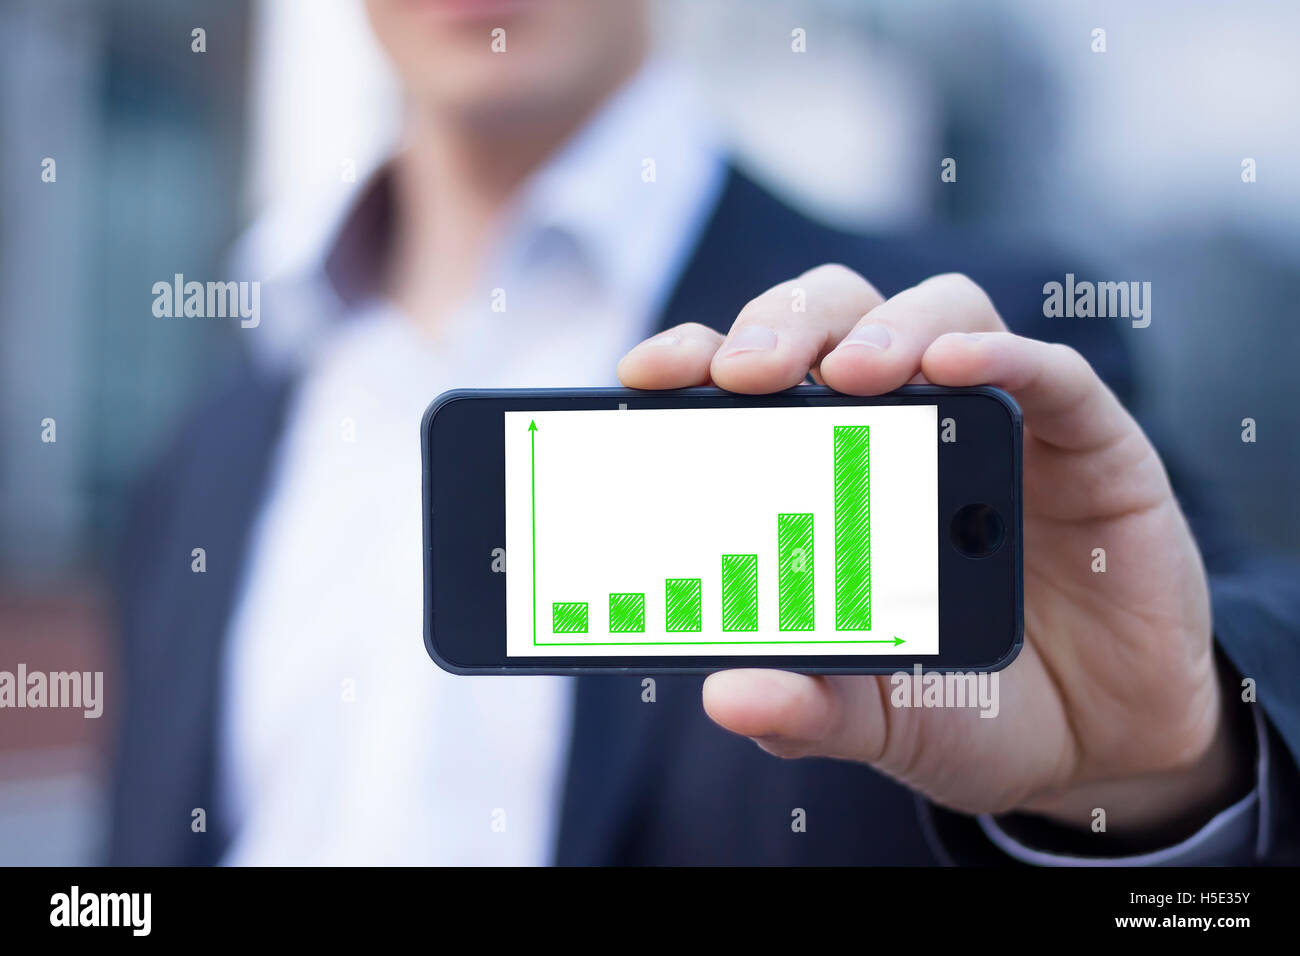 Businessman montrant l'écran du smartphone avec des résultats en matière de développement durable sur le green bar chart Banque D'Images